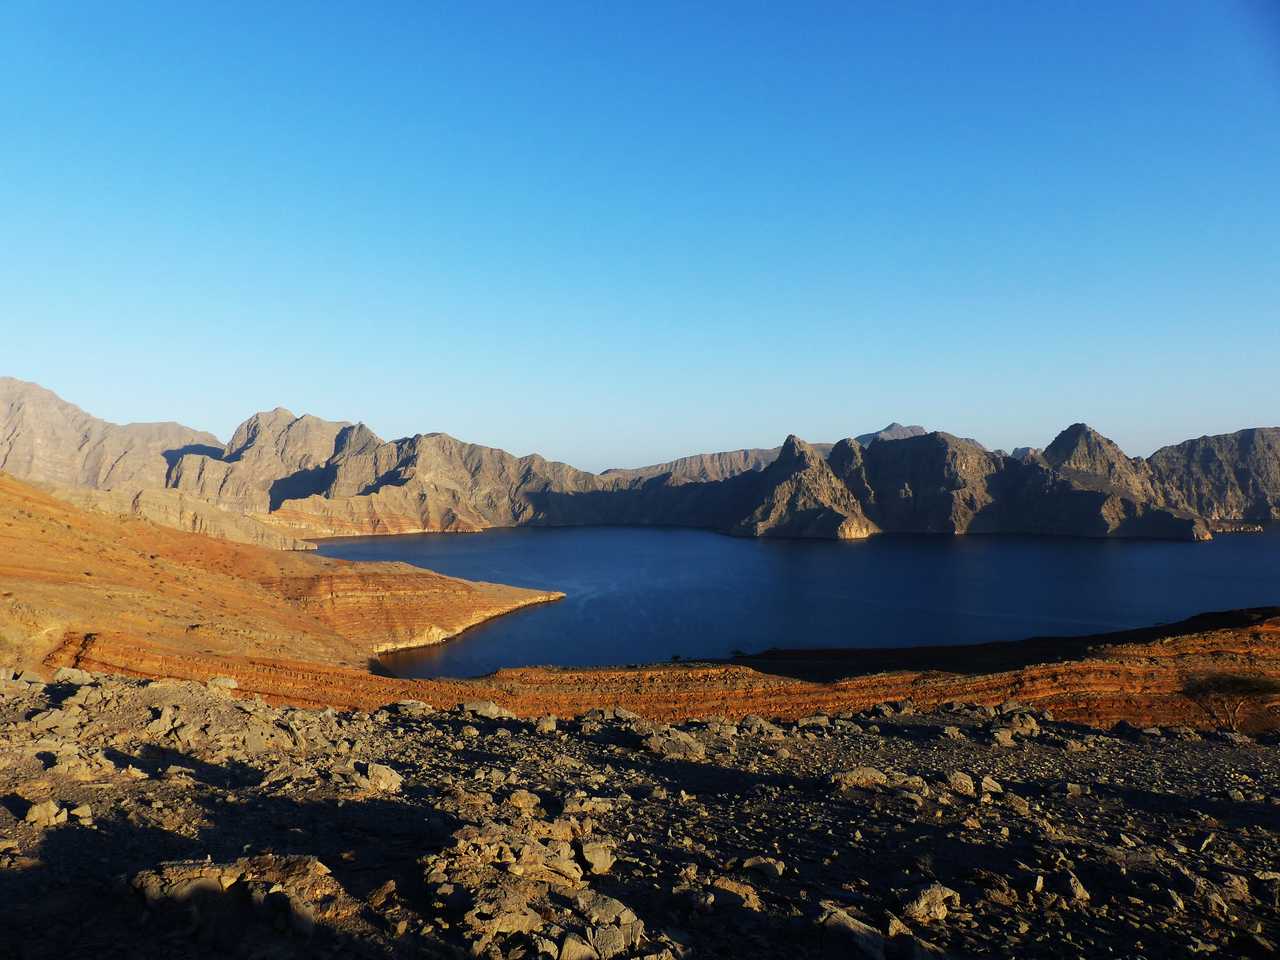 Fond de la baie de sham à Oman